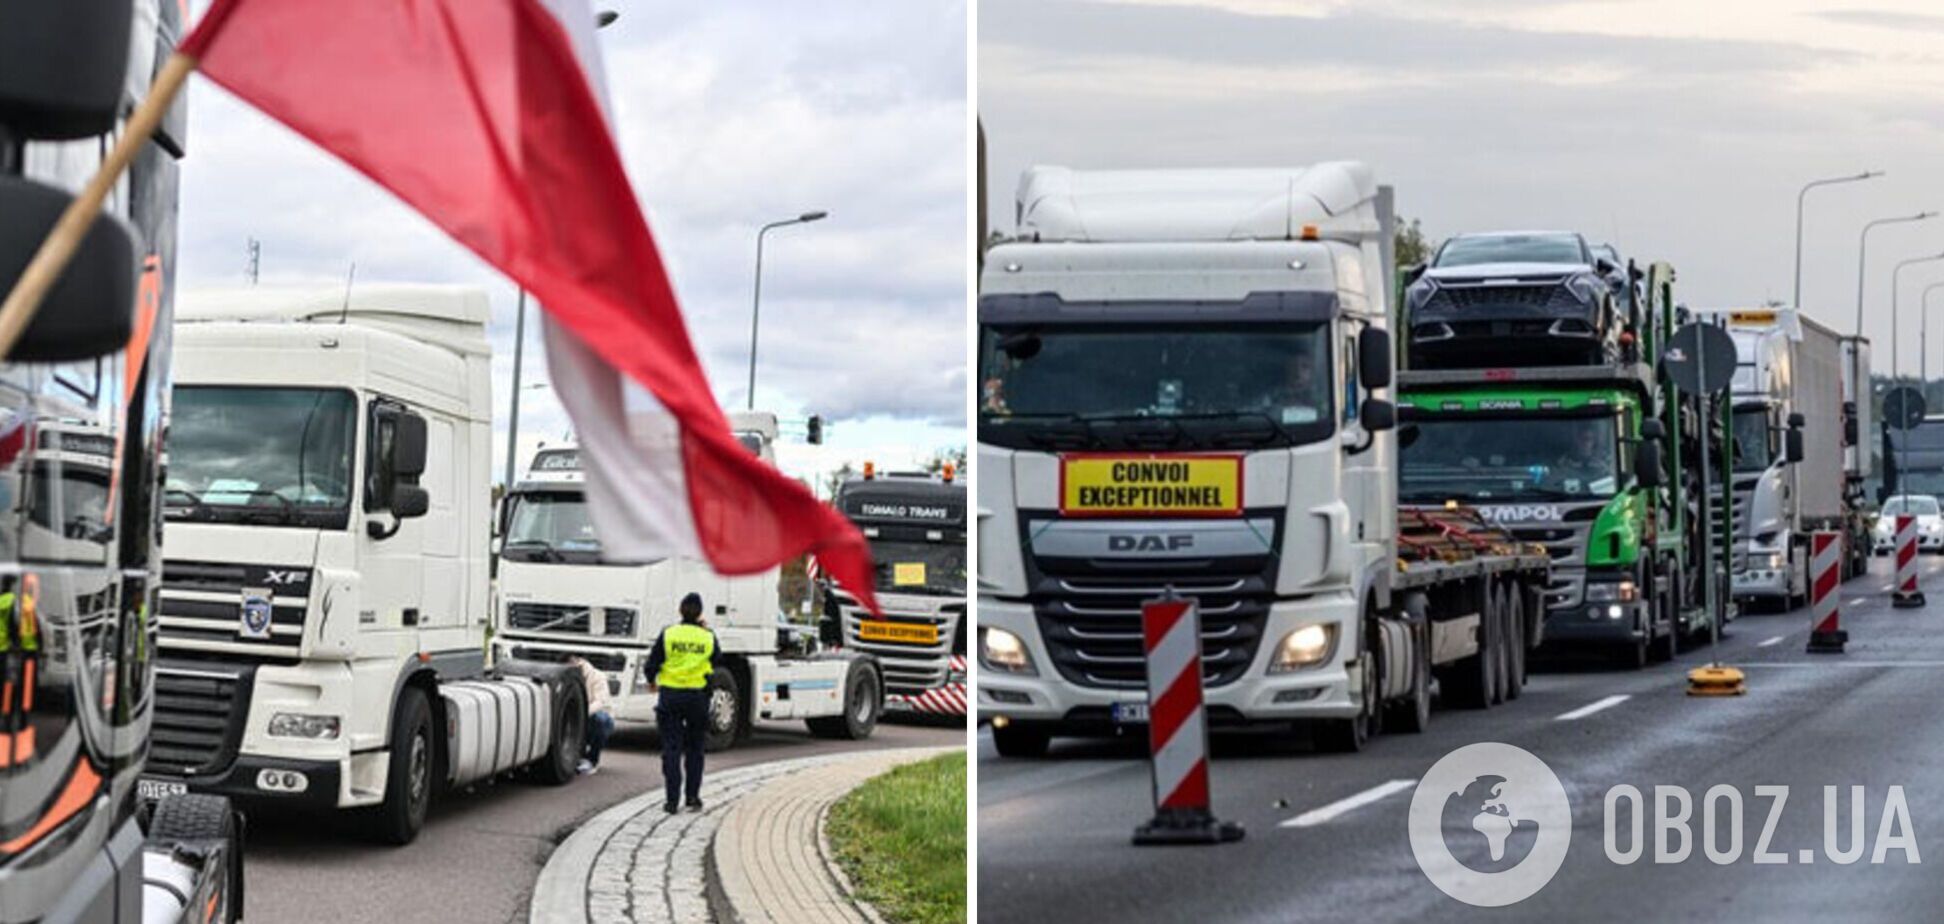 Какая страна пострадает больше от полного закрытия границы между Польшей и Украиной